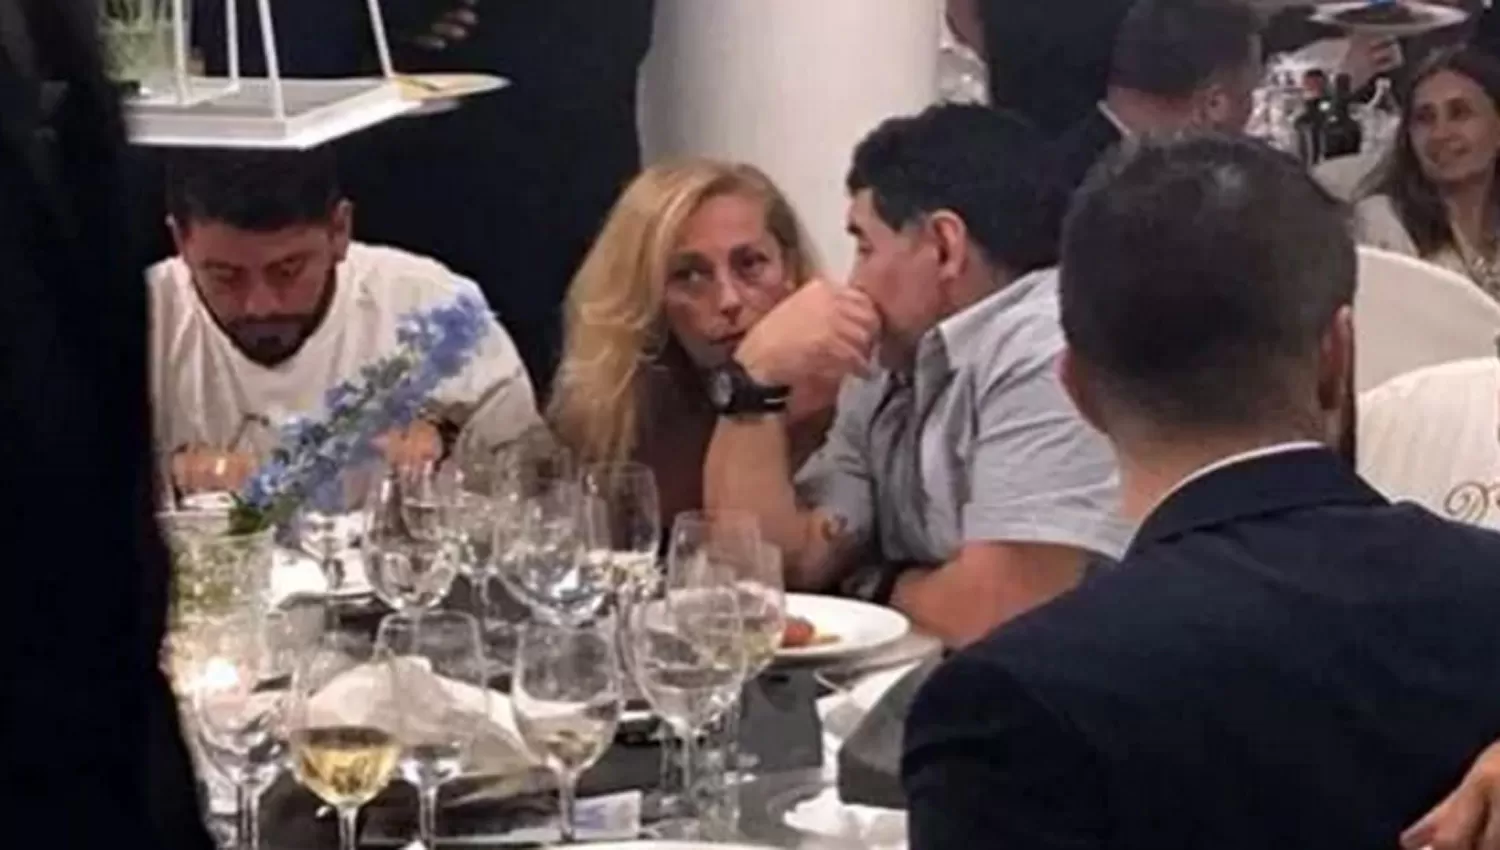 LOS TRES. Diego Jr, Sinagra y Maradona se mostraron juntos después de casi tres décadas. FOTO TOMADA DE INFOBAE.COM